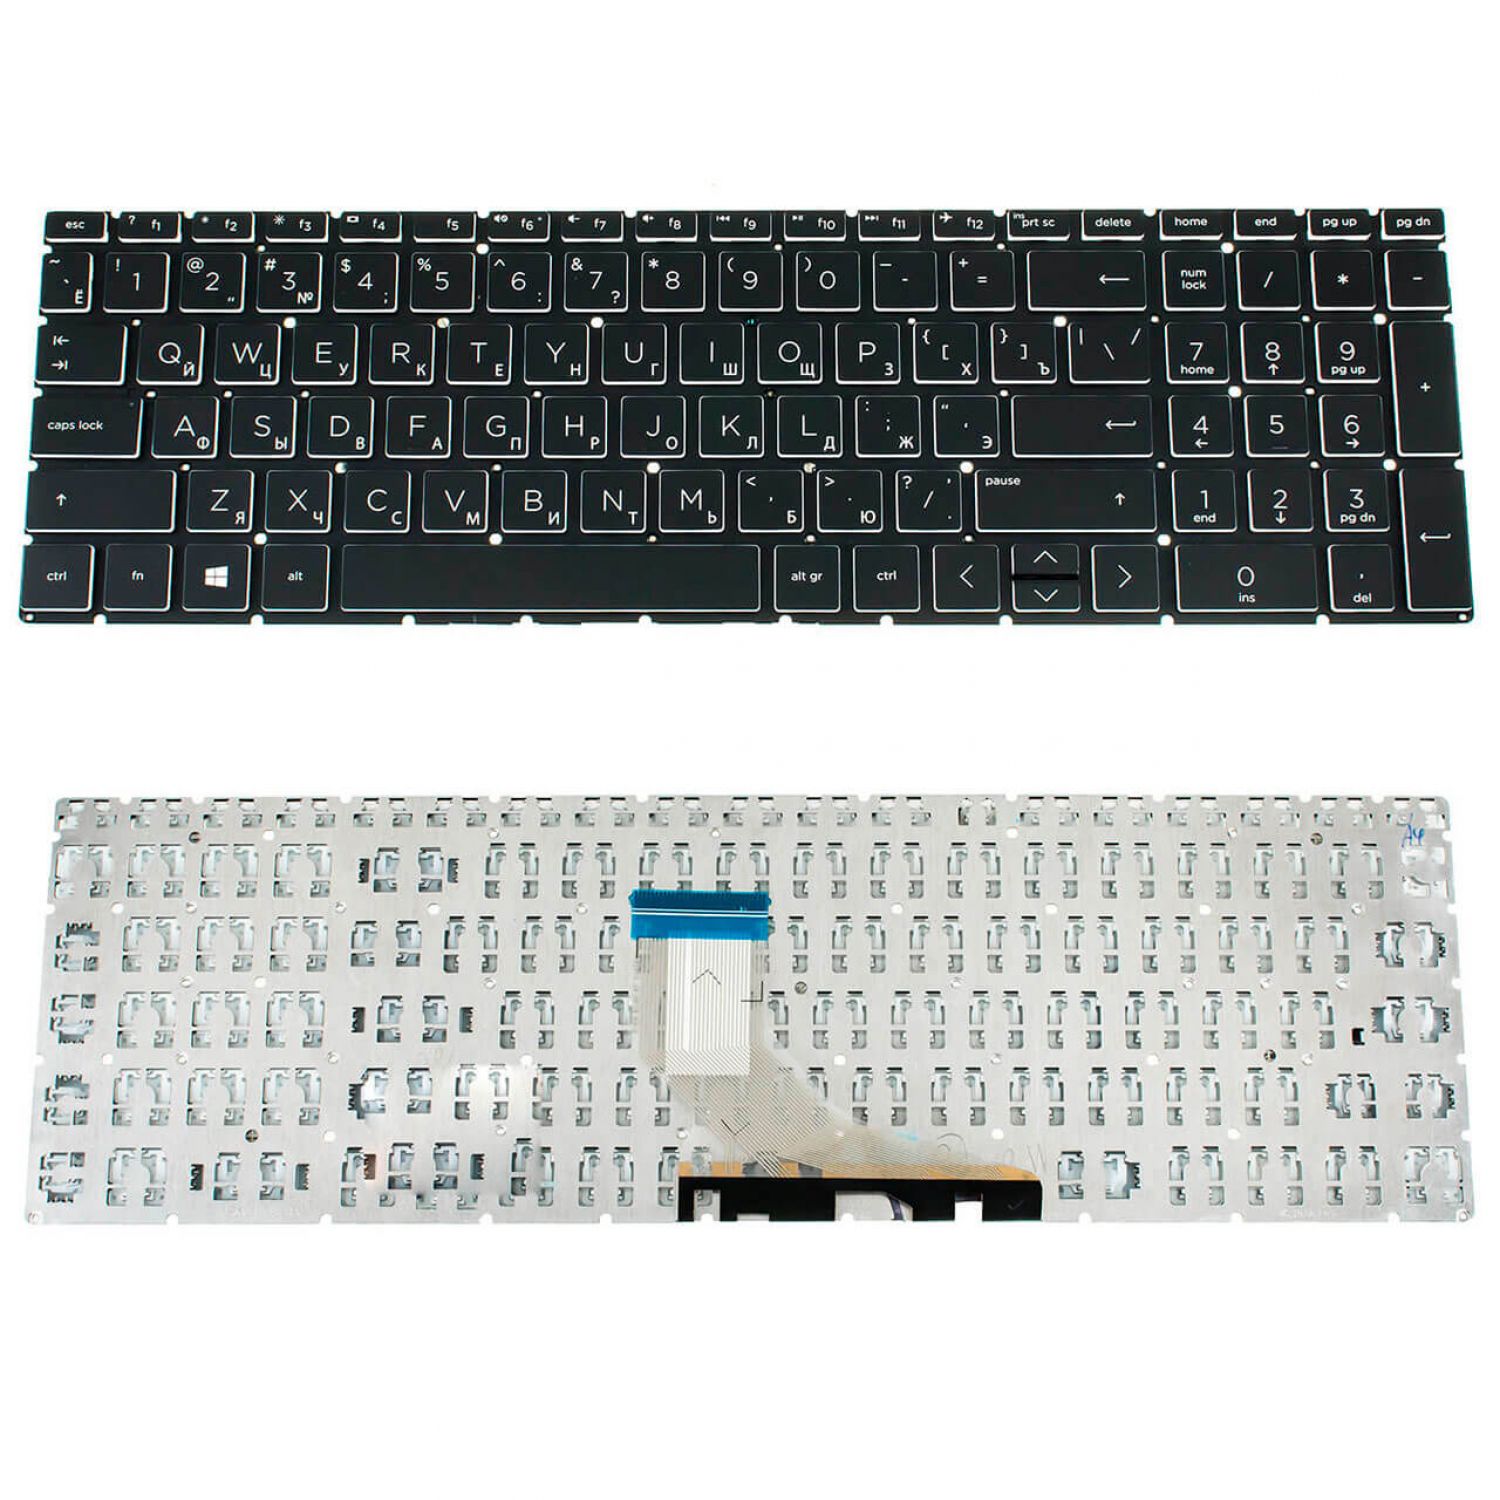 HP Laptop 15-dw3025nk